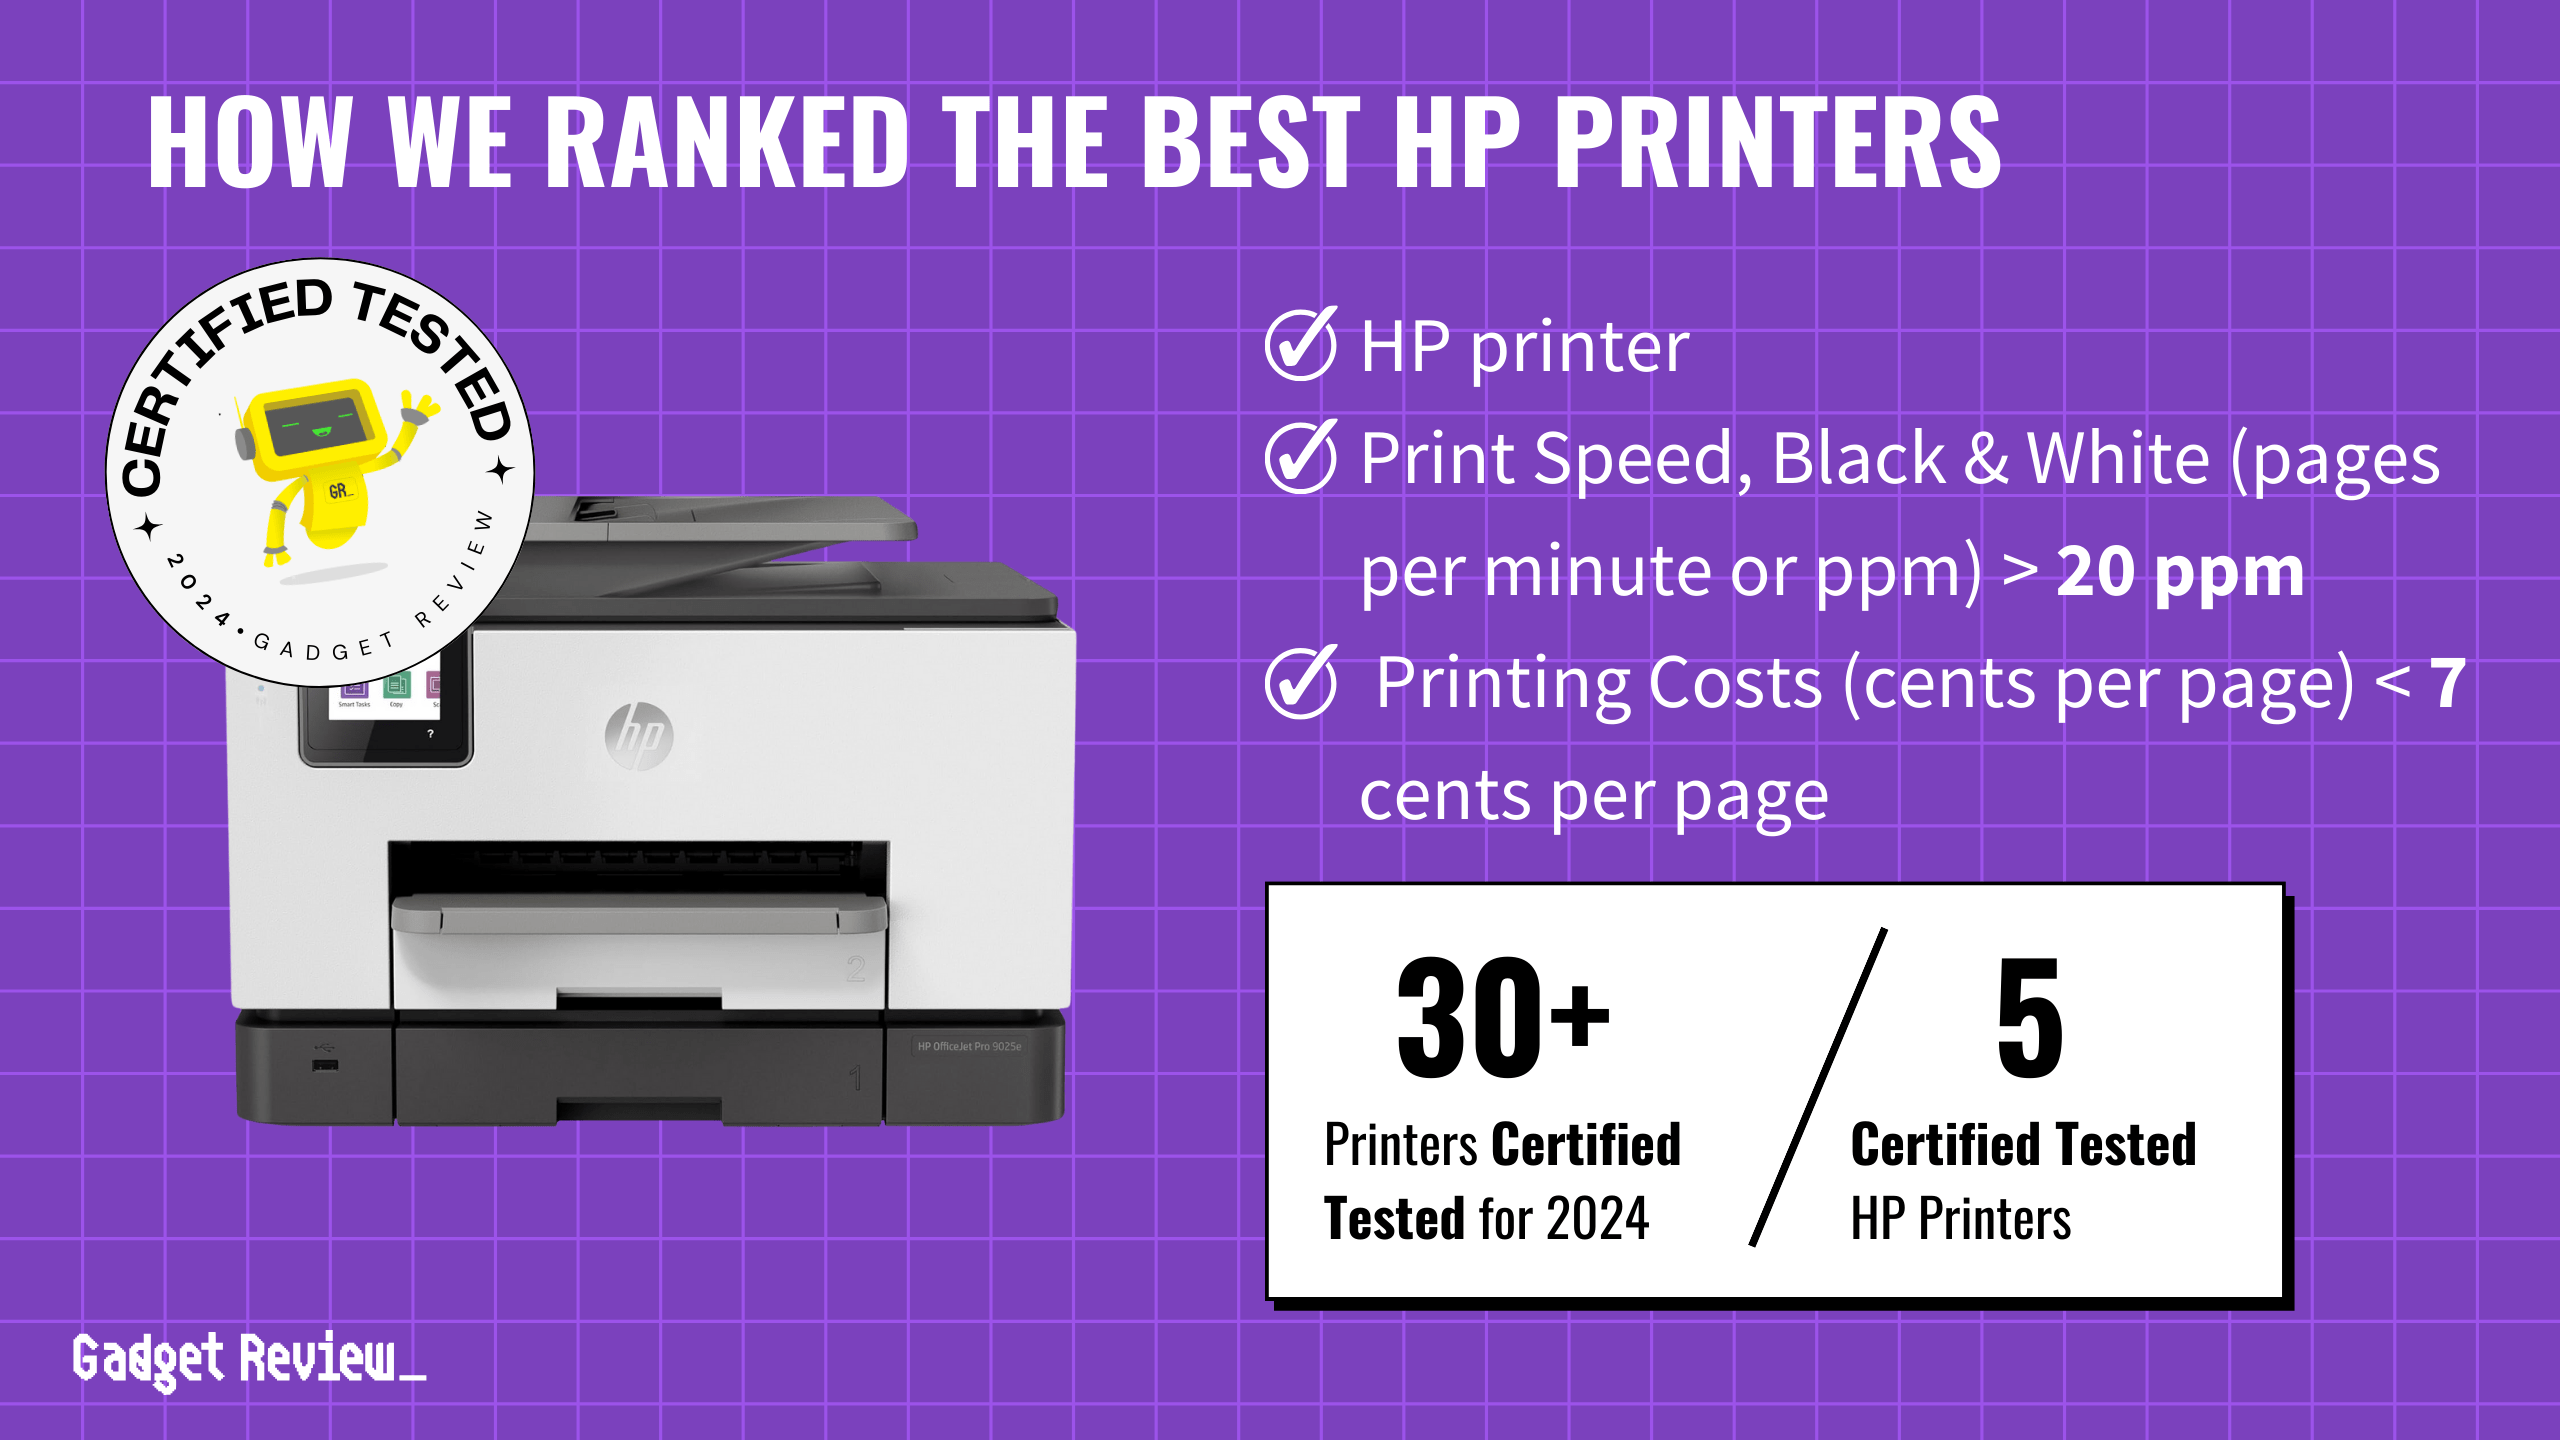 We Ranked the 5 Best HP Printers